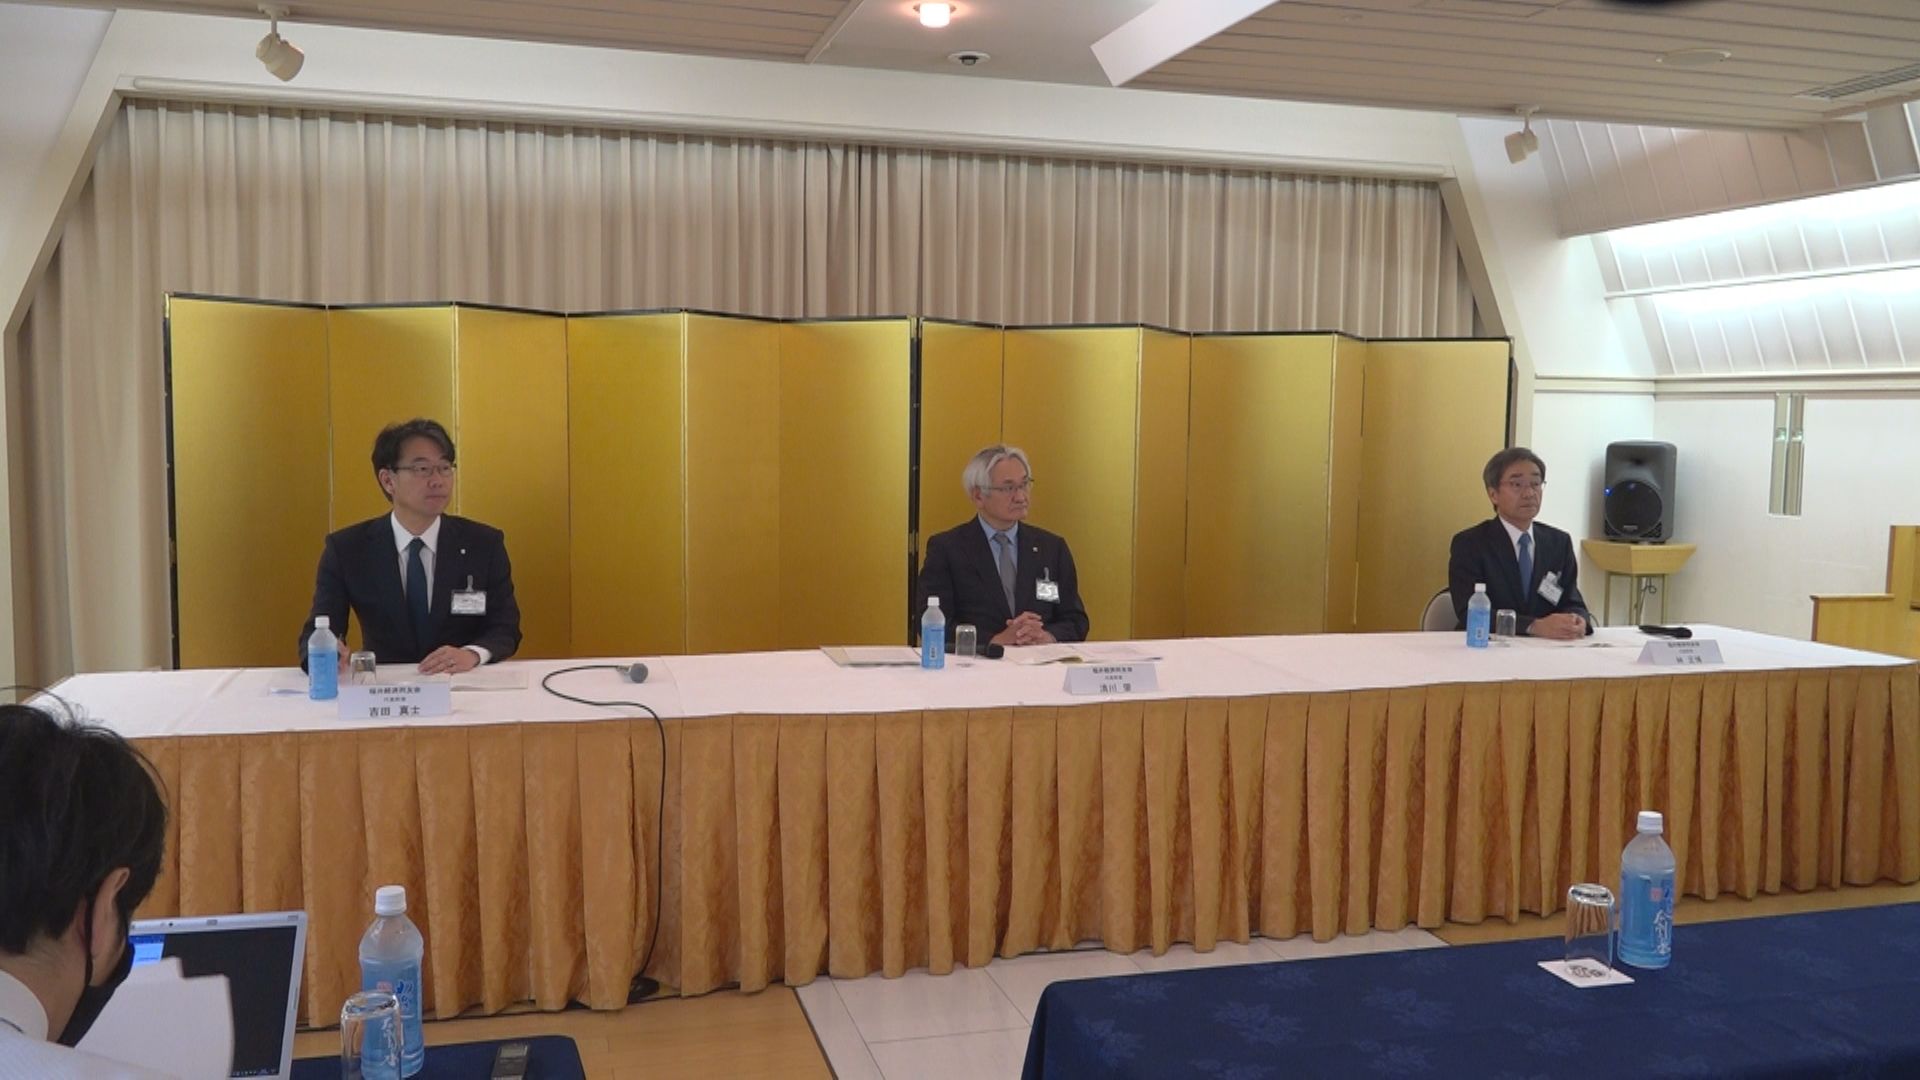 「エネルギー」と「人口減少問題」2つの委員会立ち上げ 福井経済同友会が議論内容を行政に提言へ